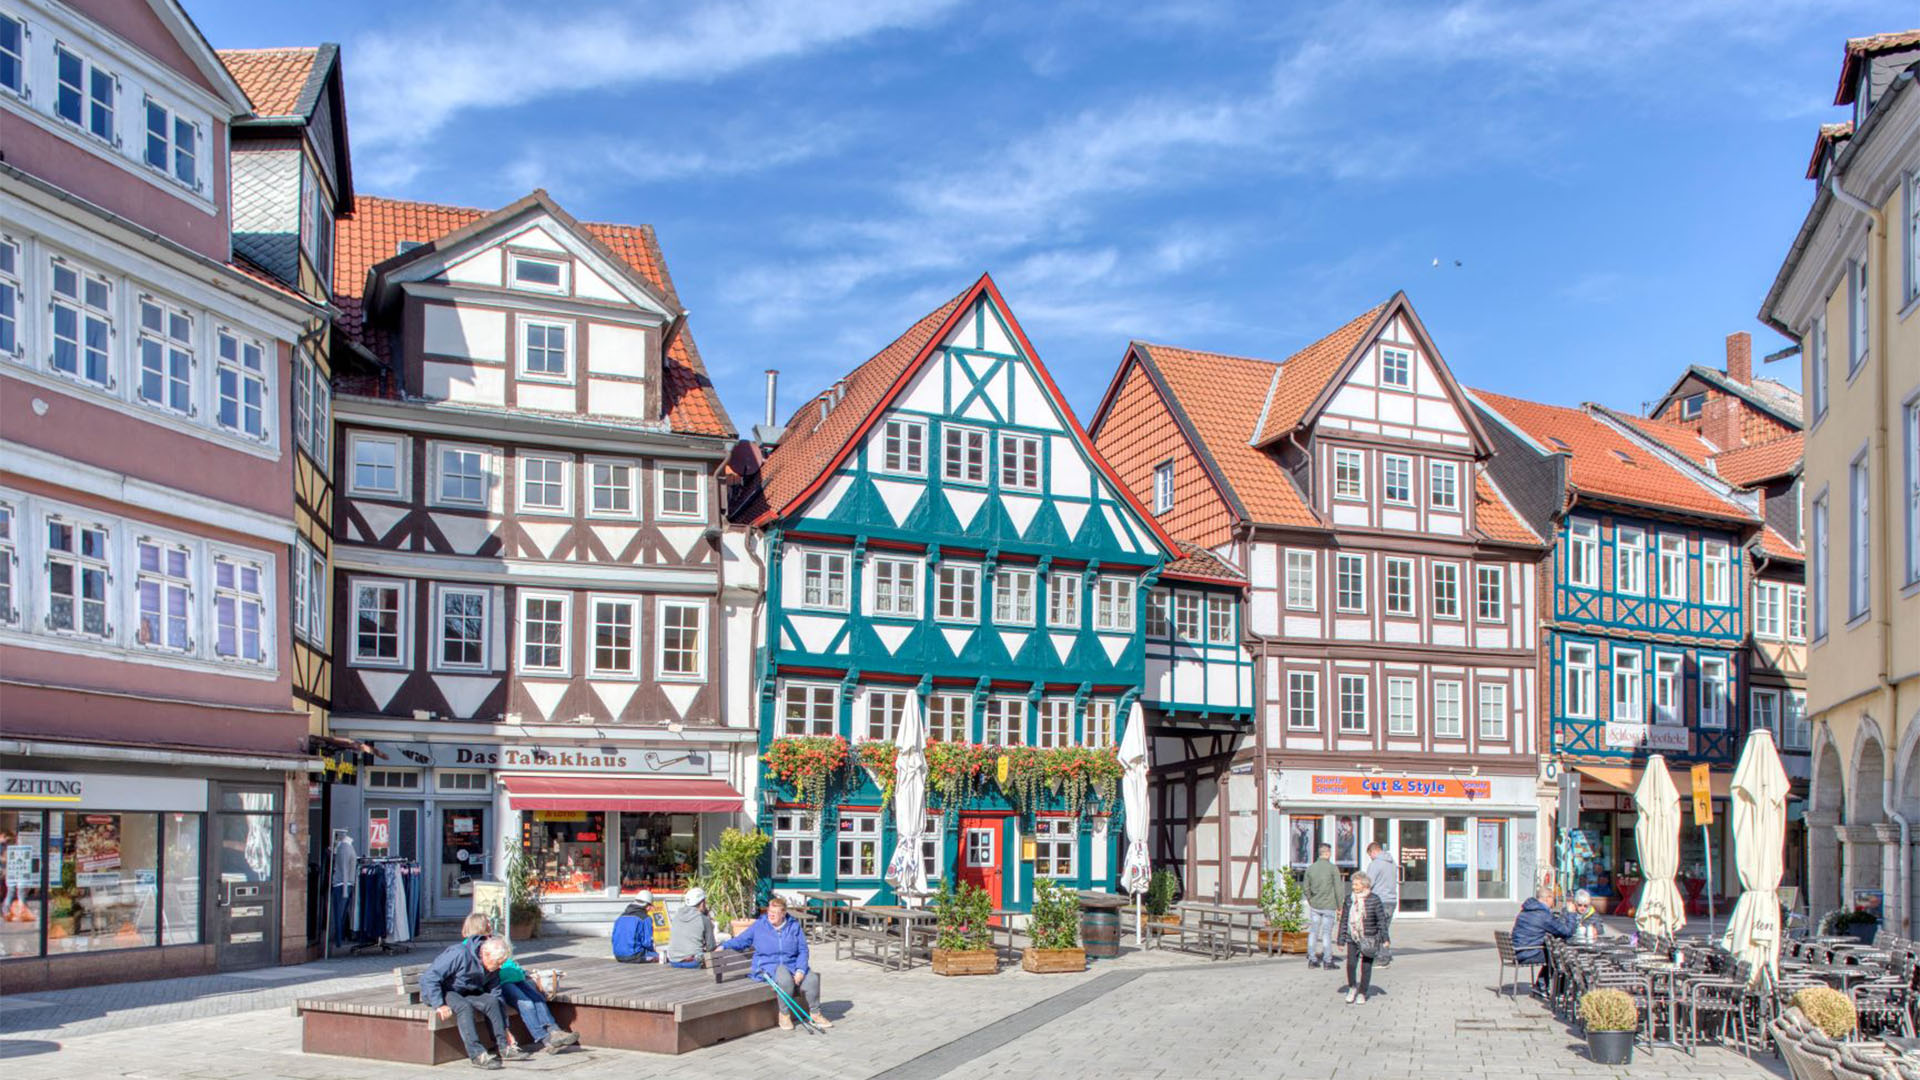 Blick in die Wolfenbütteler Fußgängerzone mit Fachwerkhäusern und Sitzgelegenheiten, auf denen sich Bürgerinnen und Bürger ausruhen.